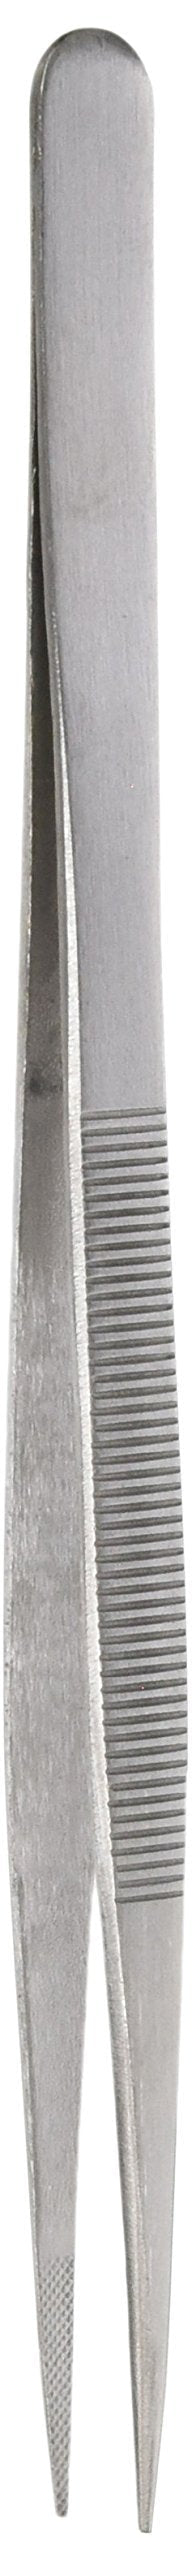 SE 6.5-Inch Medium Point Diamond Tweezers - 504TW